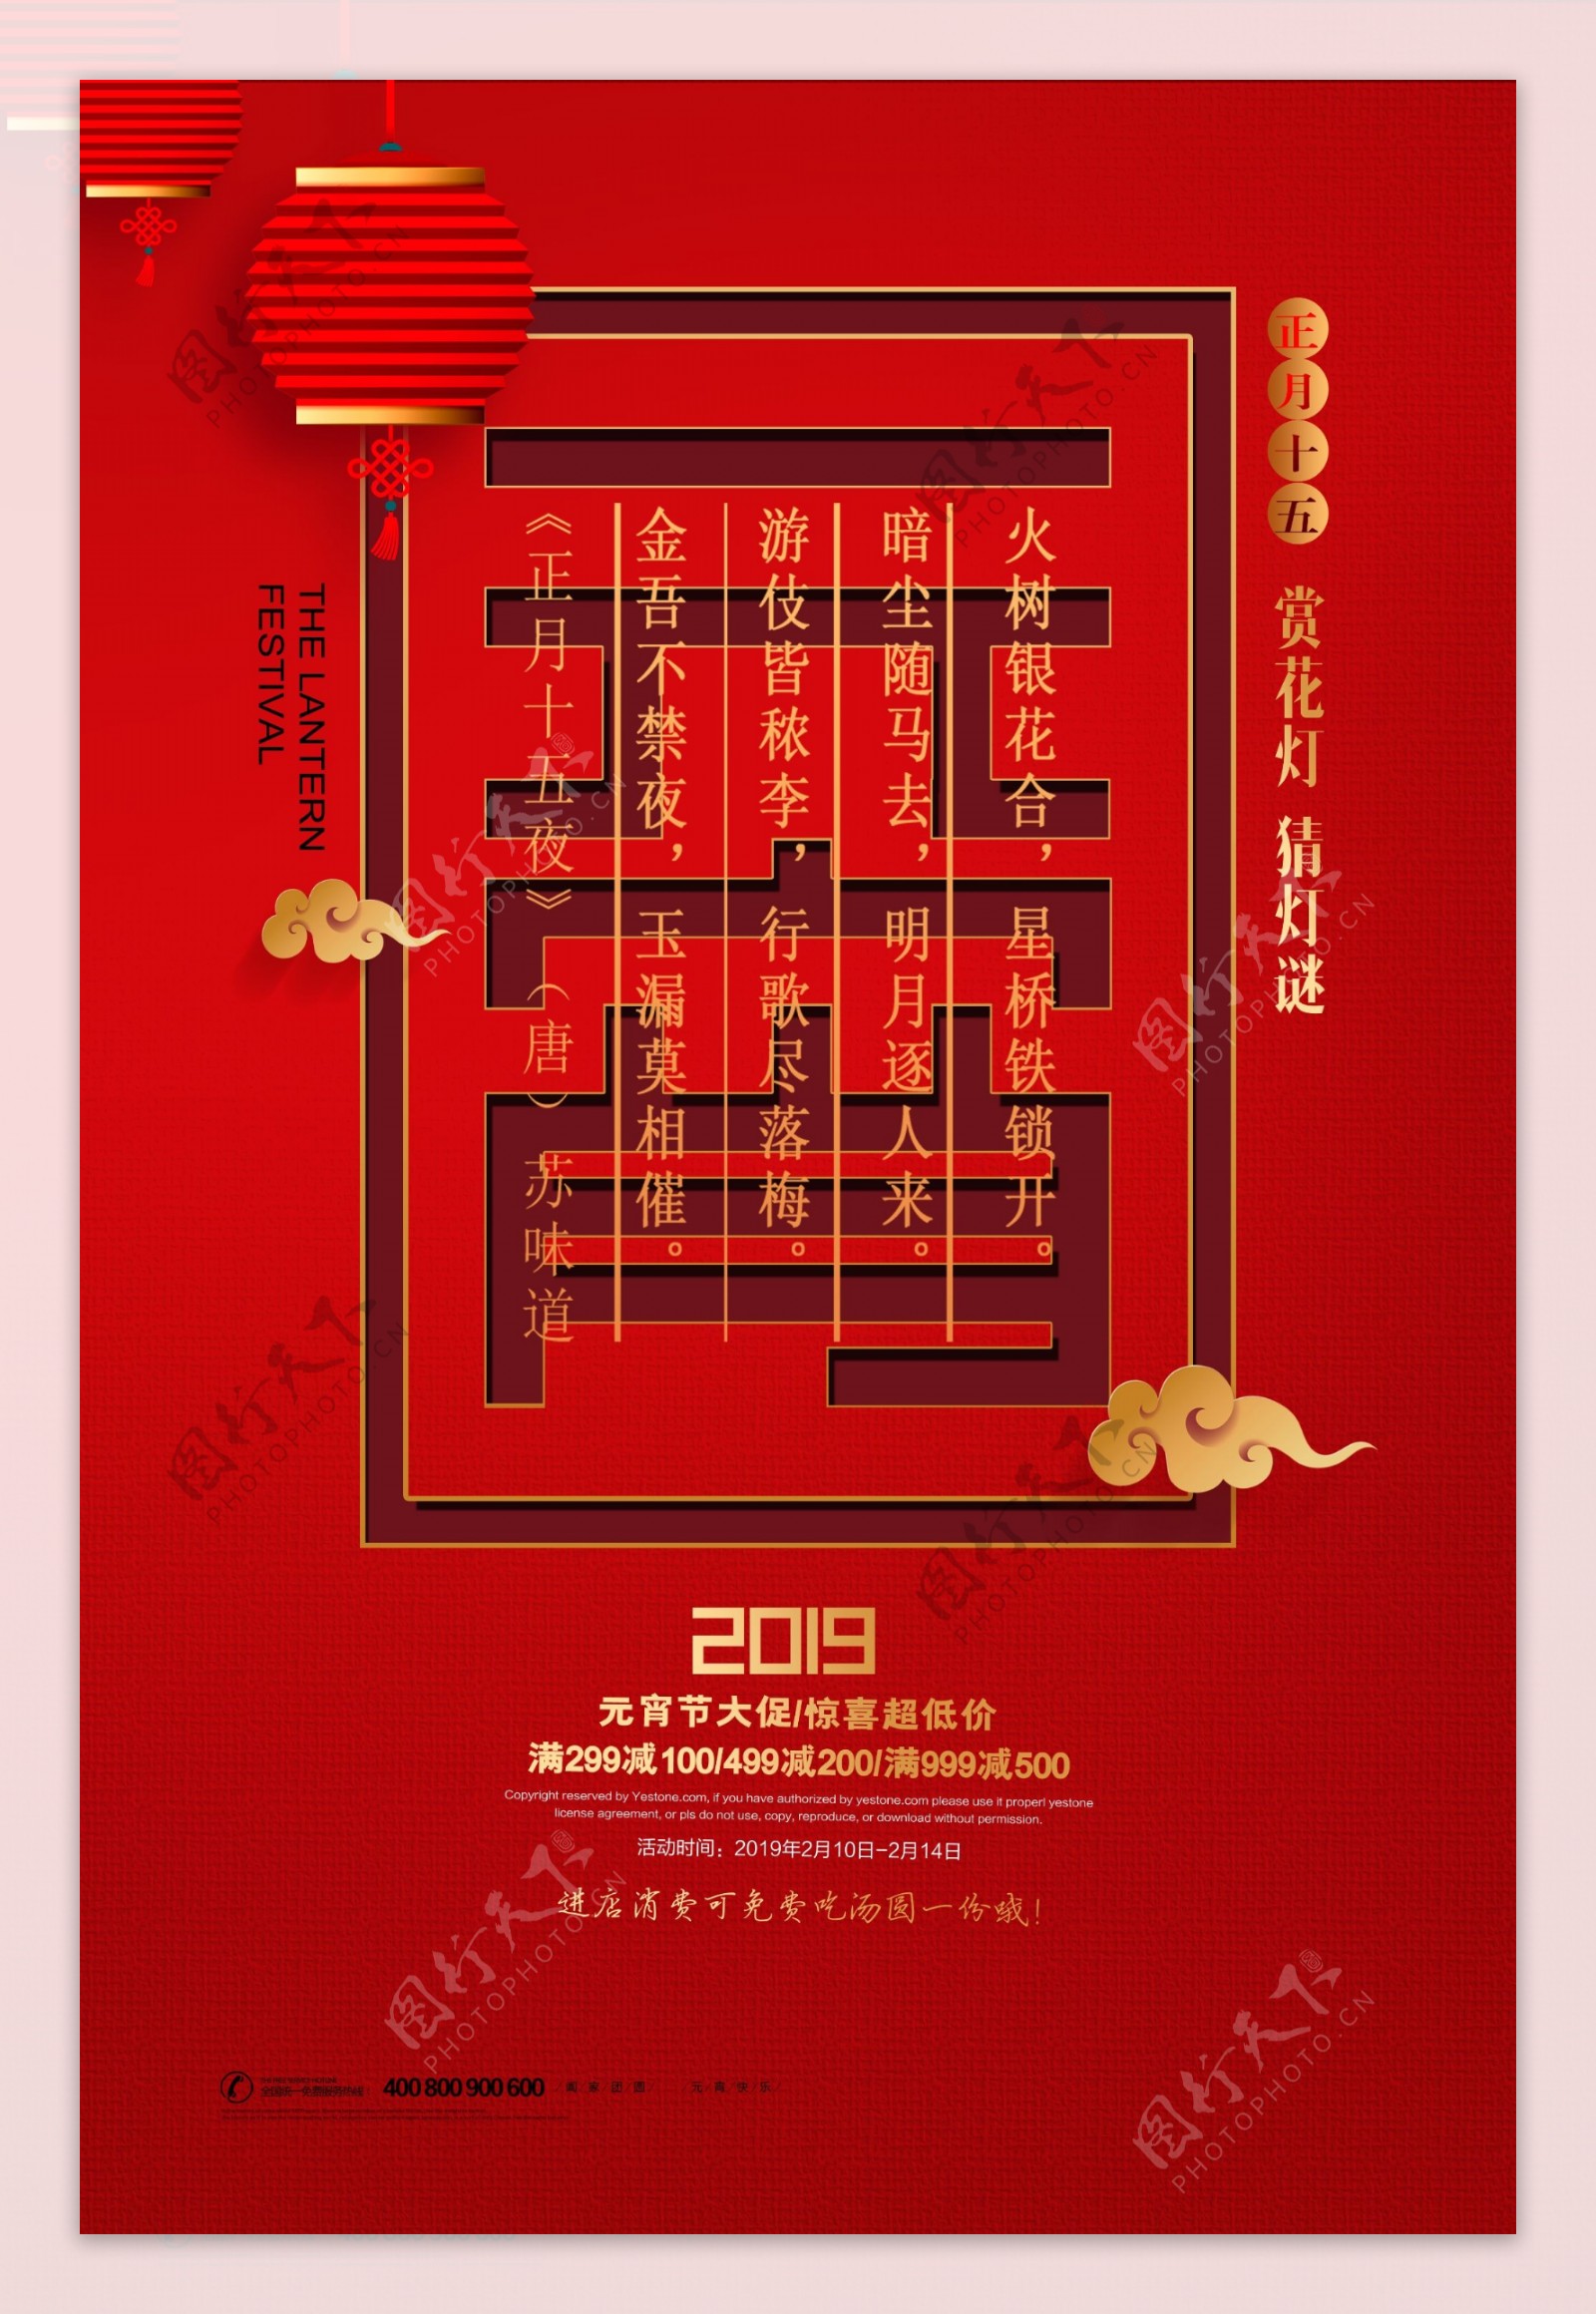 中国红2019元宵节海报